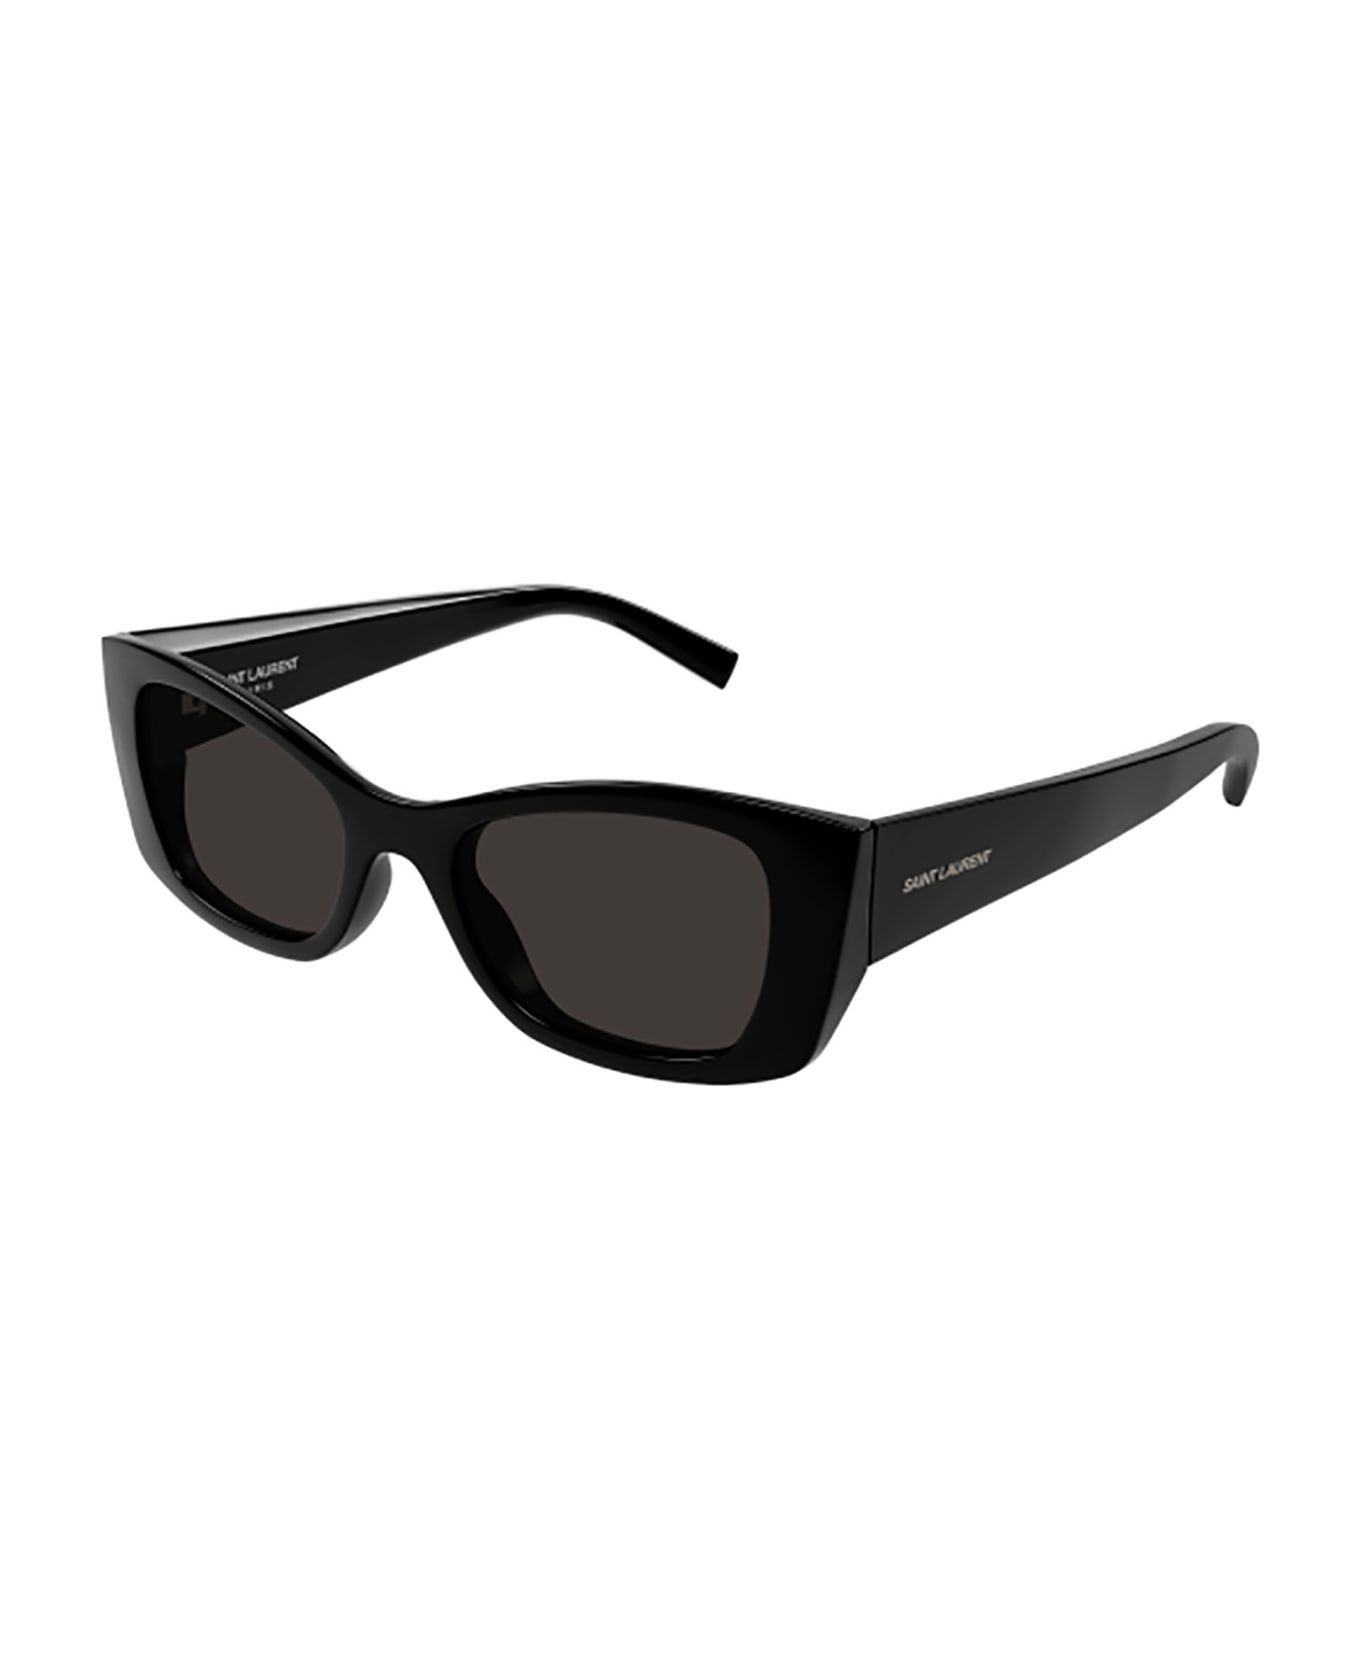 Saint Laurent Eyewear Sl 593 Sunglasses - 001 black black black サングラス